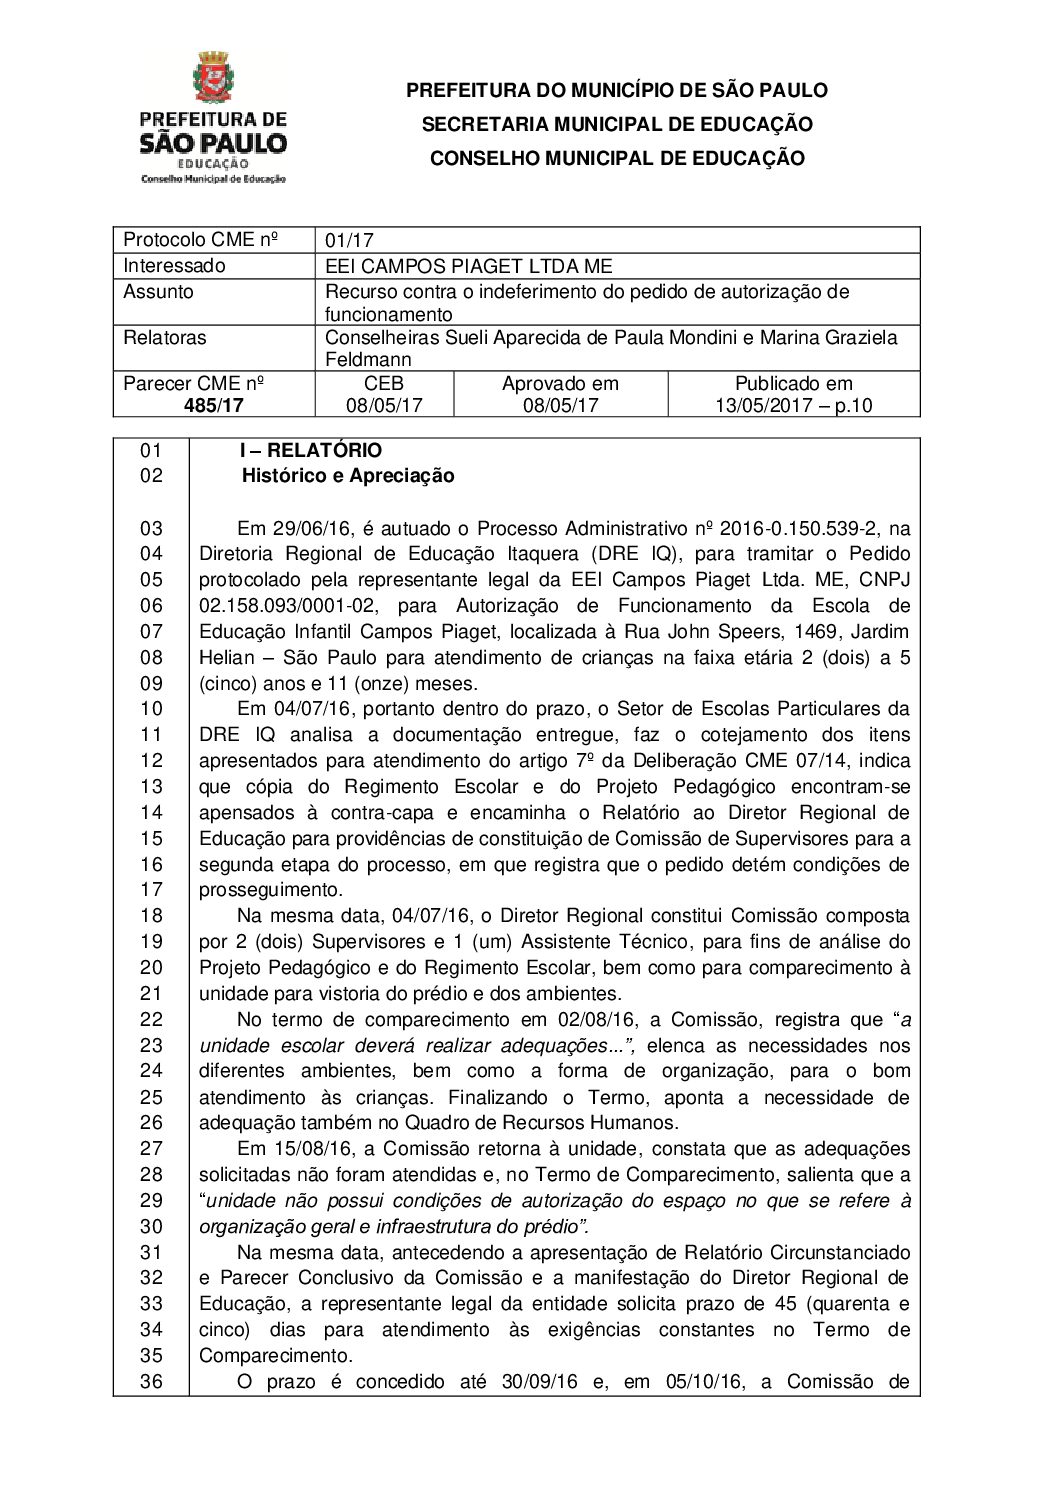 Parecer CME nº 485/2017 - EEI Campos Piaget Ltda ME (DRE Itaquera) - Recurso contra o indeferimento do pedido de autorização de funcionamento 